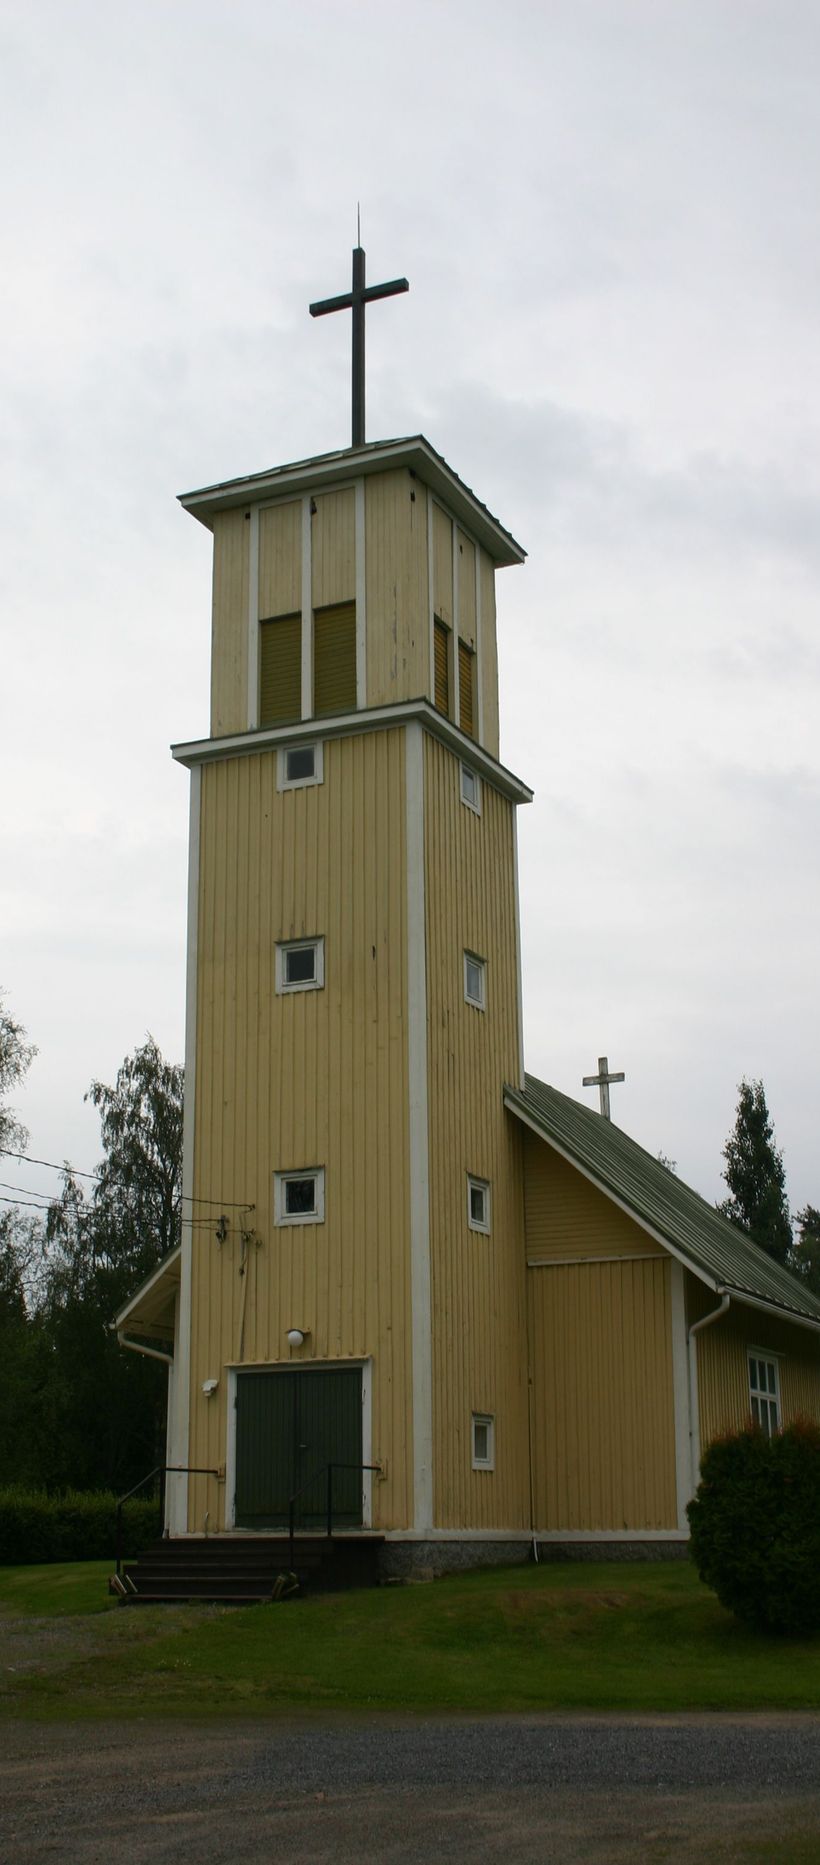 Tiukan kappeli, keltainen puurakennus, jossa korkea kellotorni